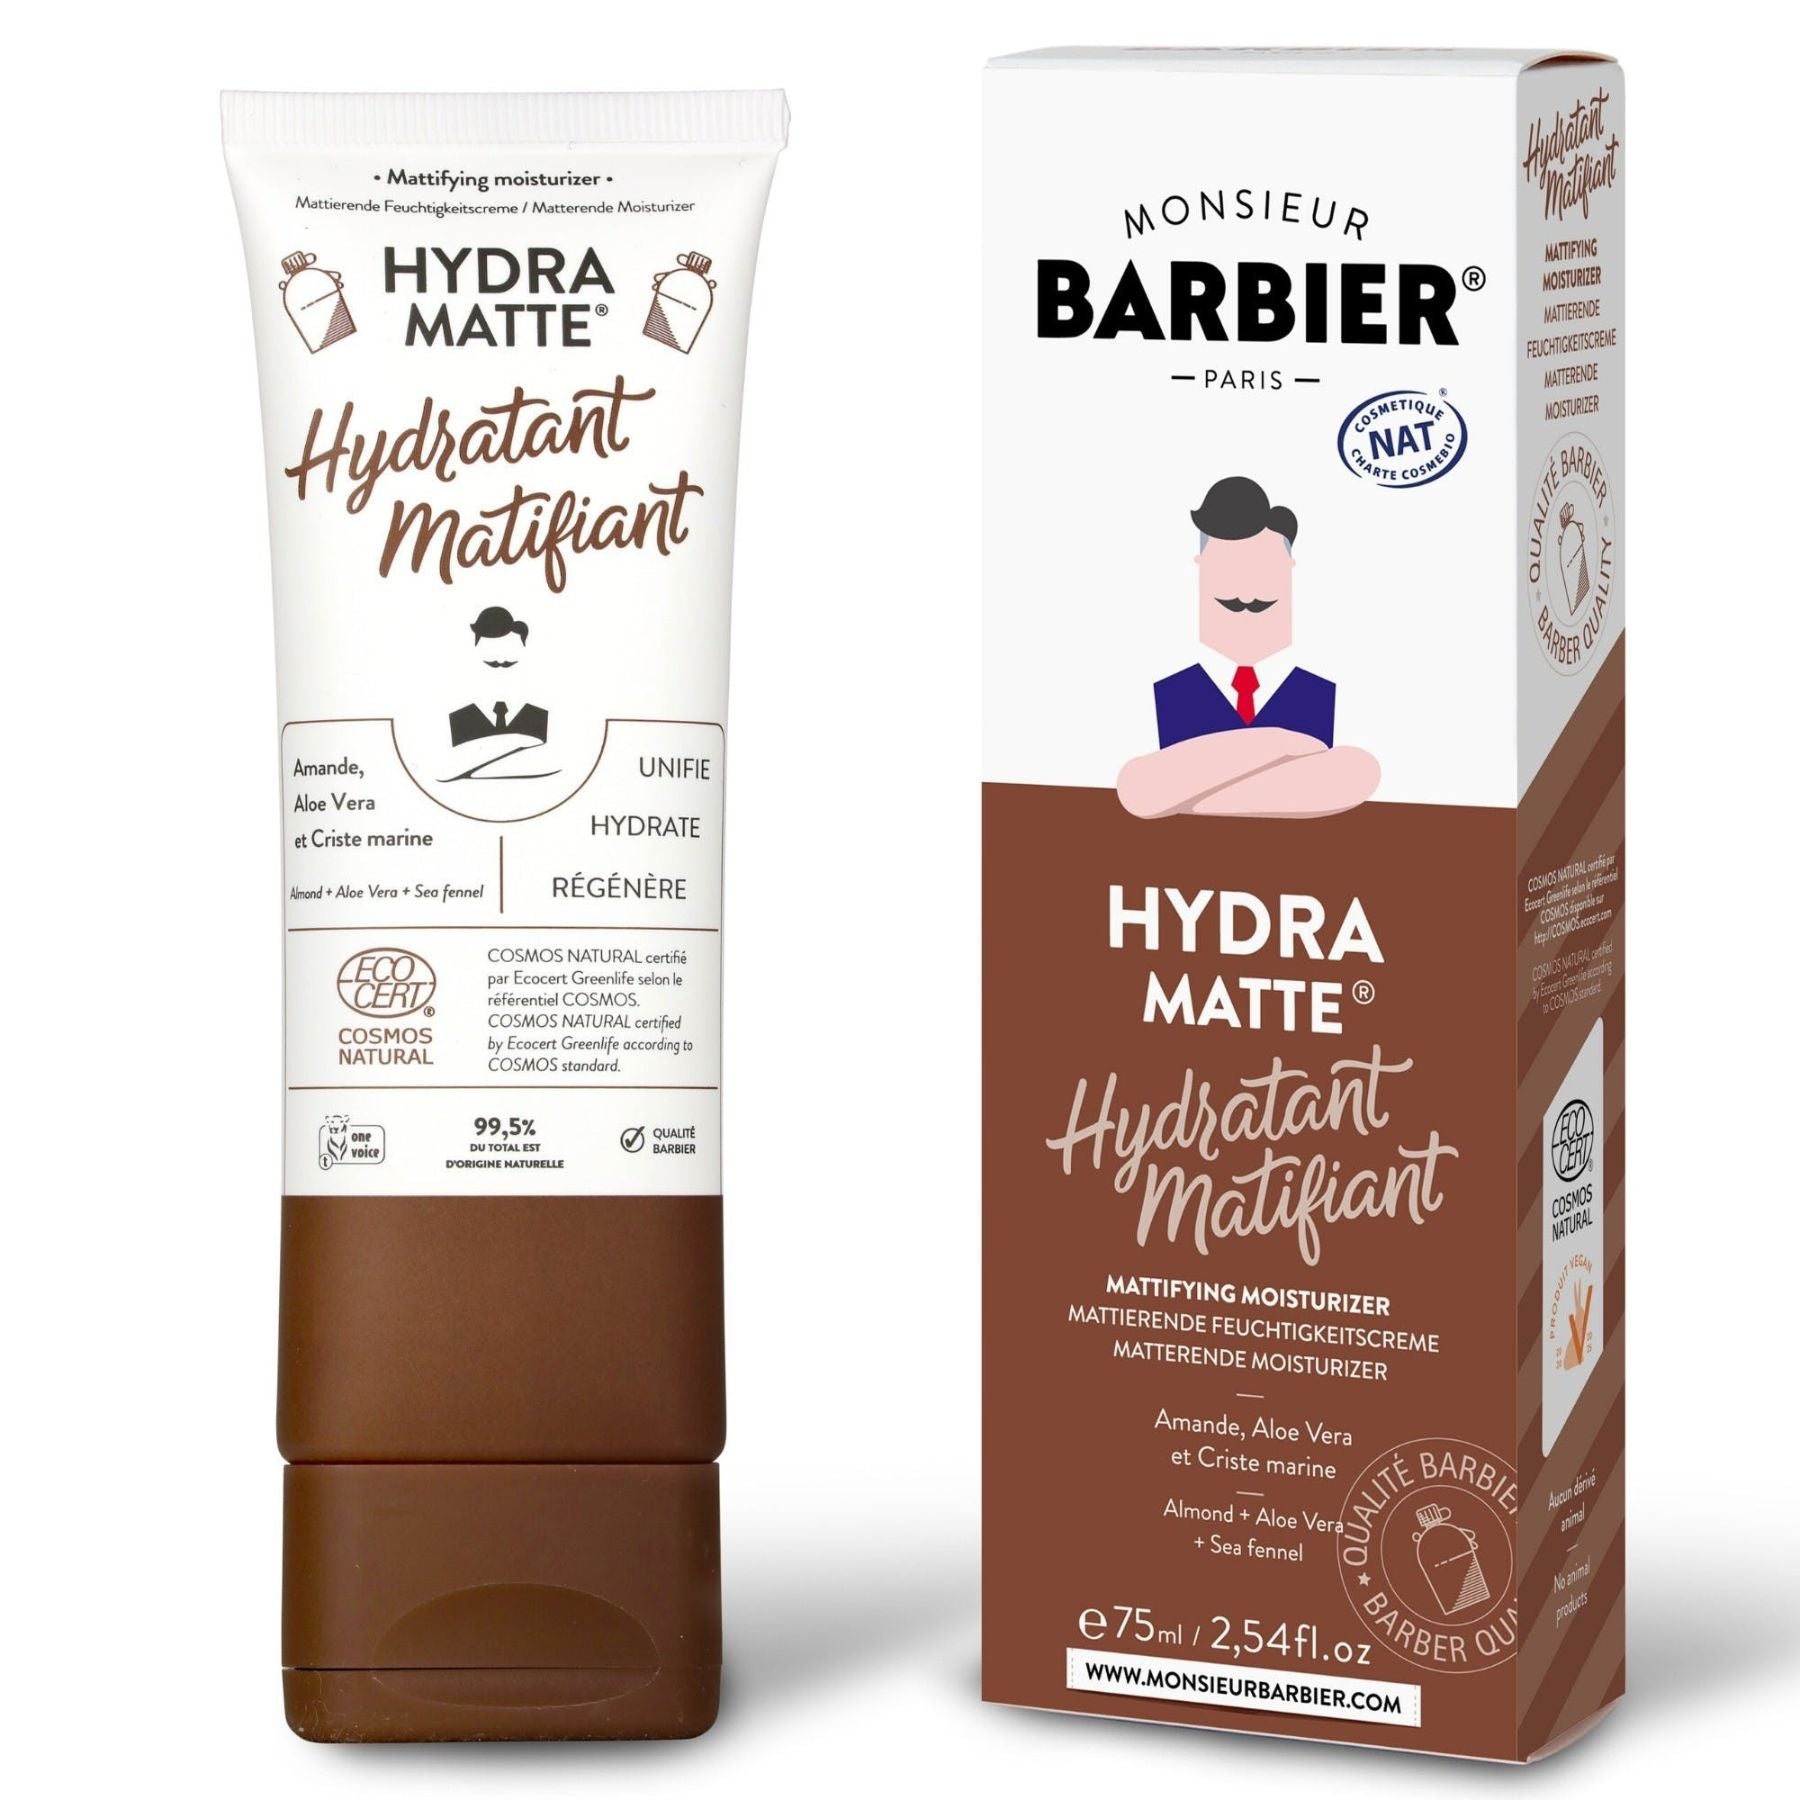 Mattierende Feuchtigkeitscreme | Hydratant Matifiant - Monsieur Barbier